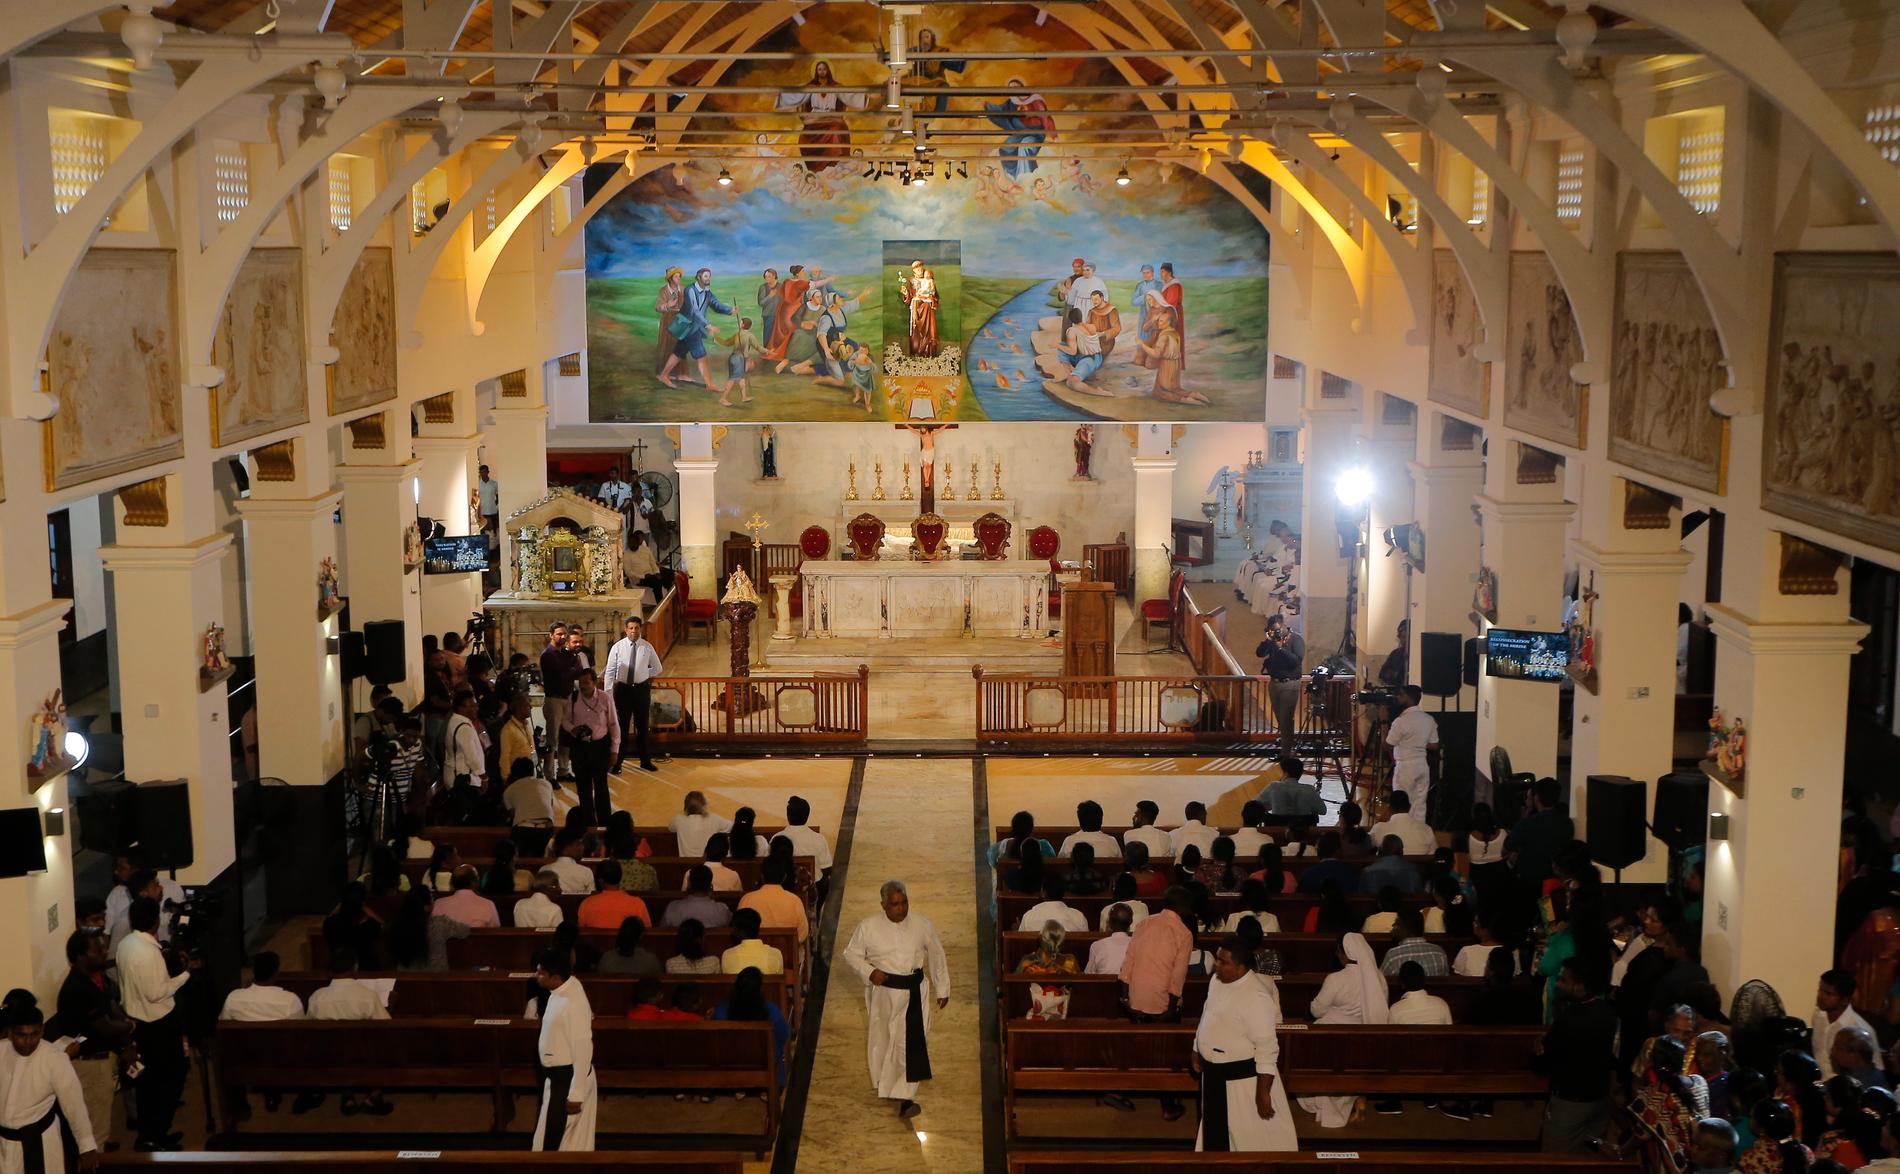 Överlevare från attacken i Sri Lanka samlas i en av kyrkorna som utsattes i påskdåden. Arkivbild från juni 2019.